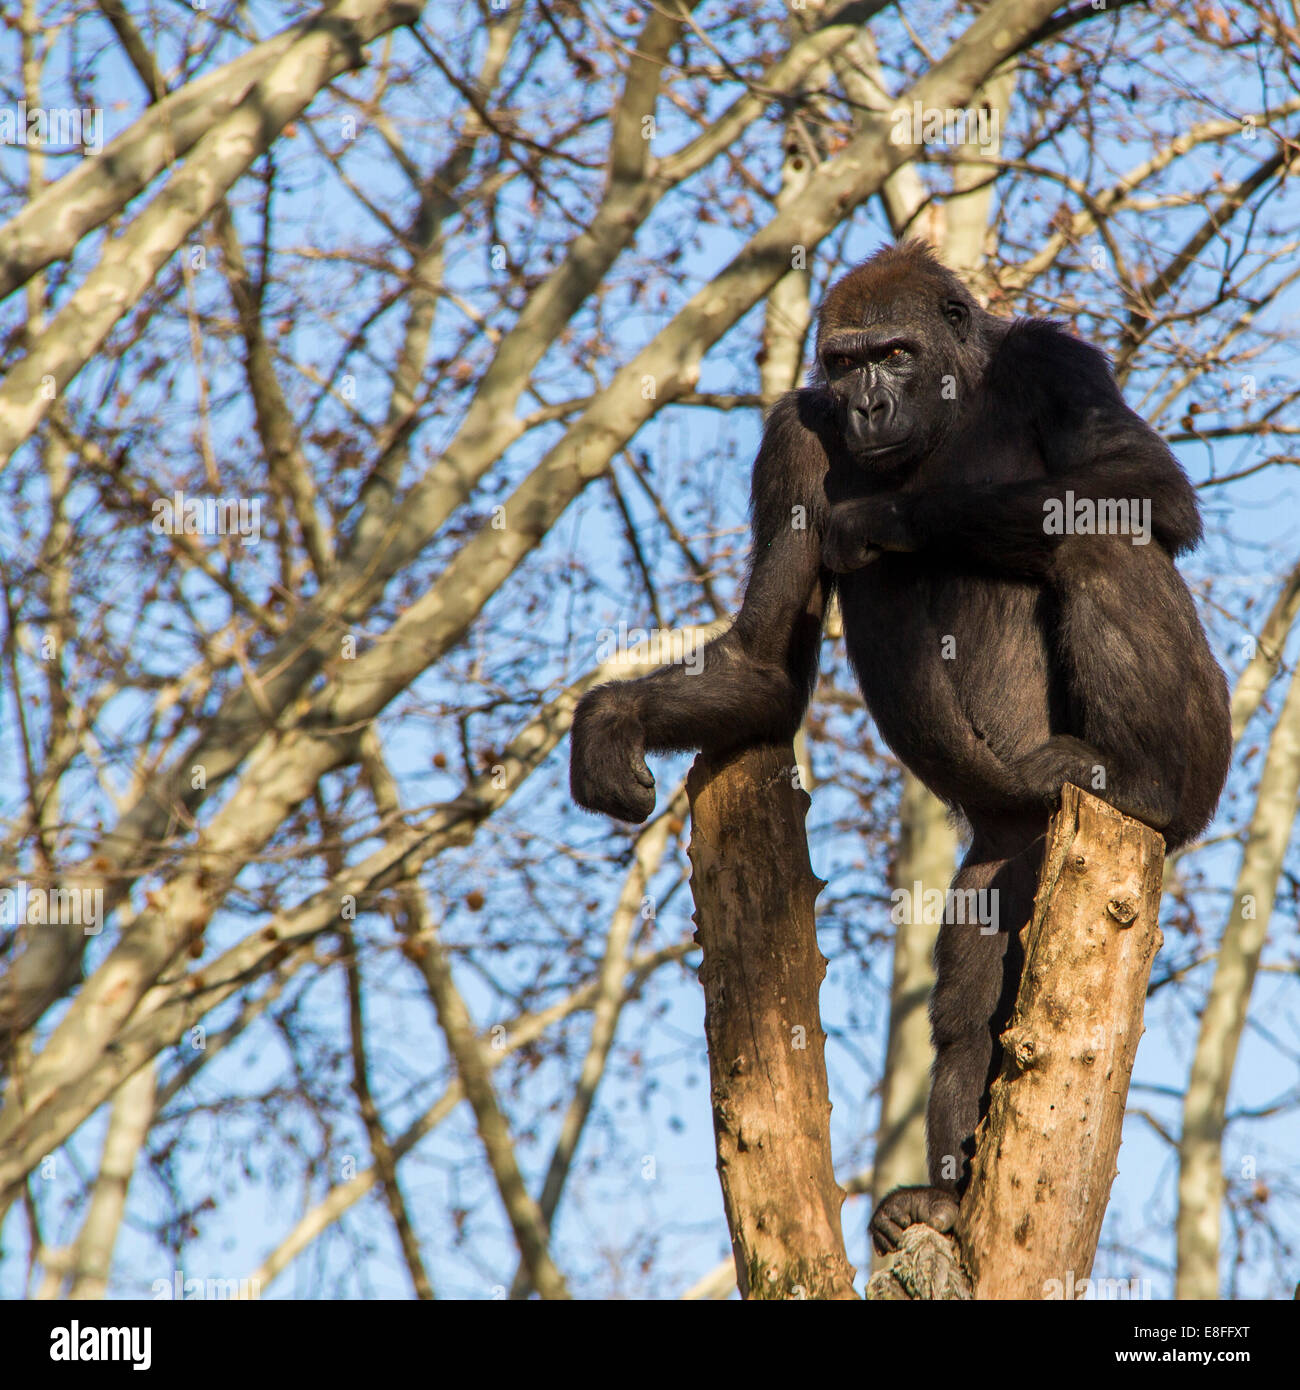 Seduta di Gorilla in una struttura ad albero Foto Stock